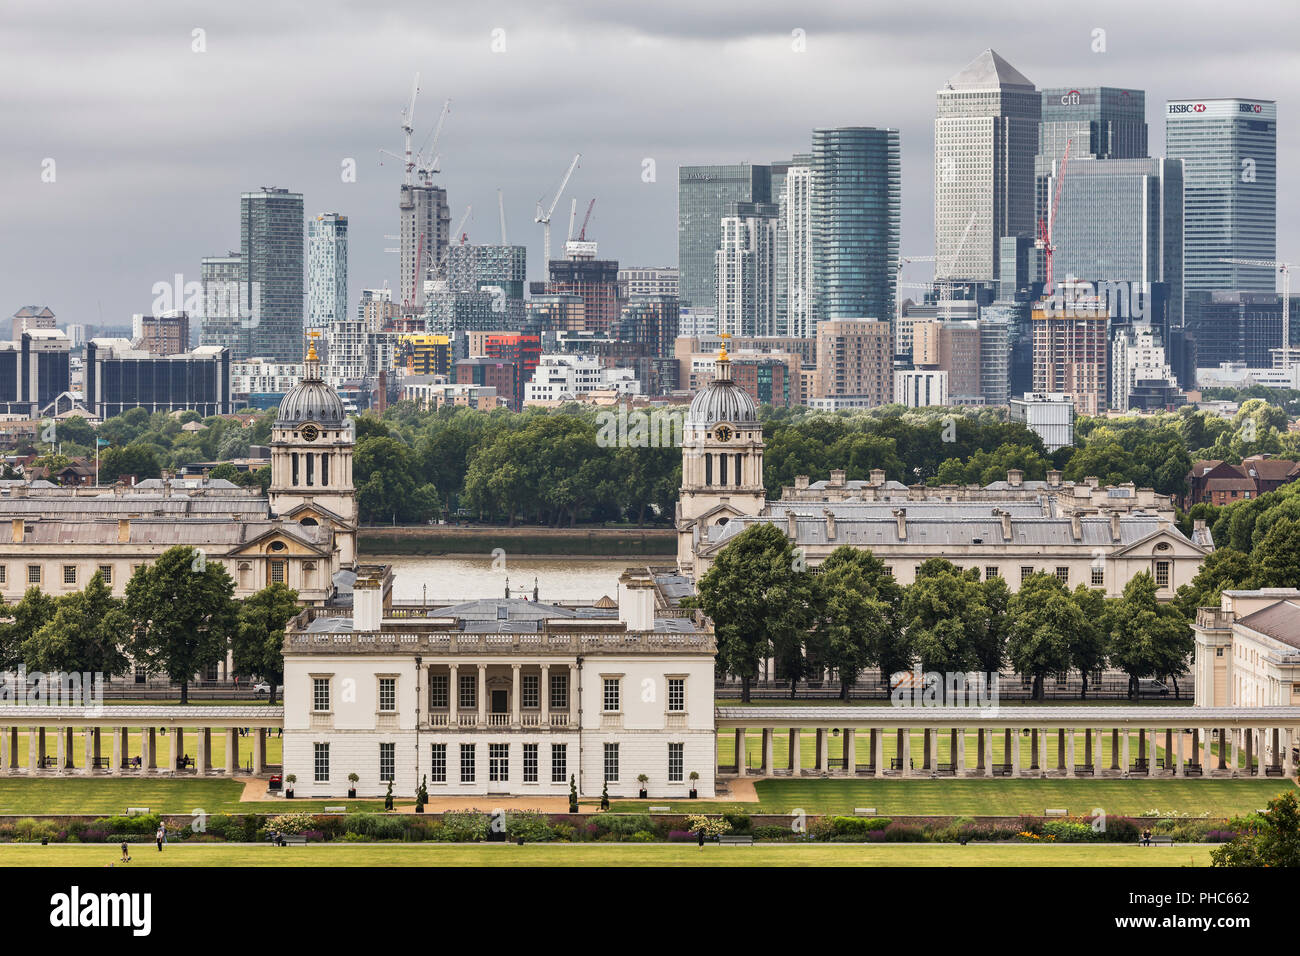 Queen's House e da Canary Wharf, cityscape da Greenwich hill, Greenwich, London, England, Regno Unito Foto Stock